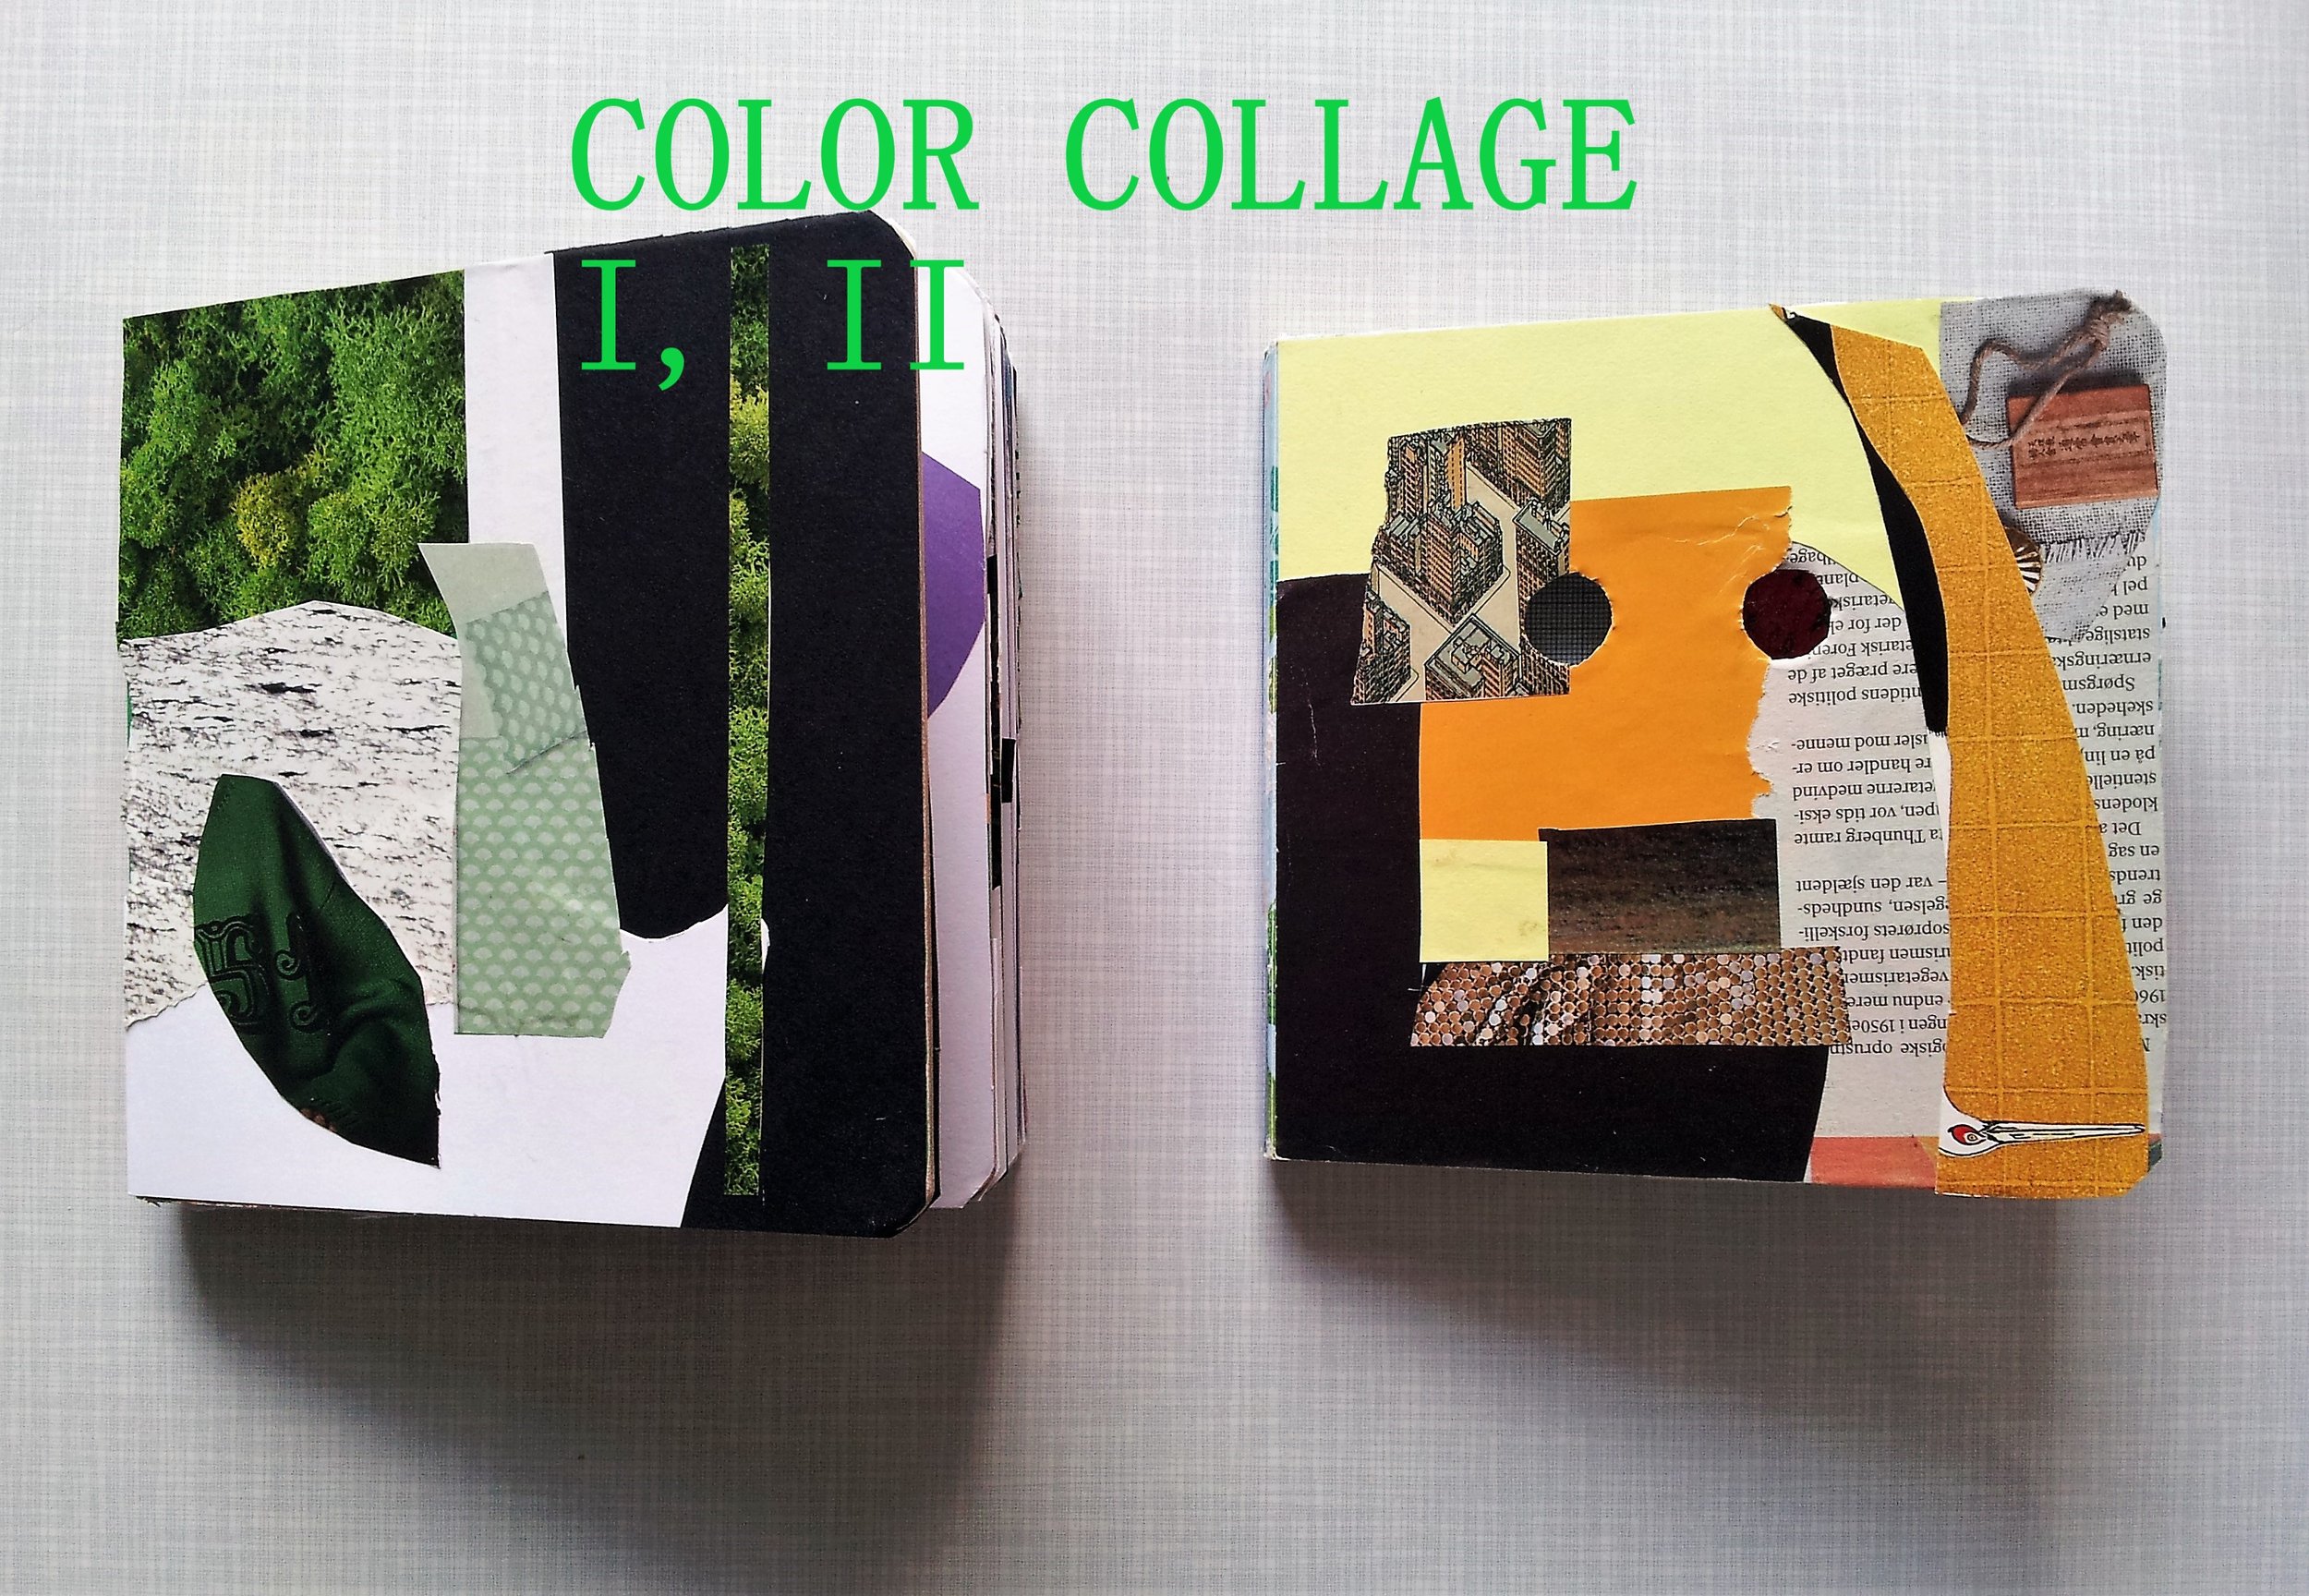 Color collage I, II.jpg